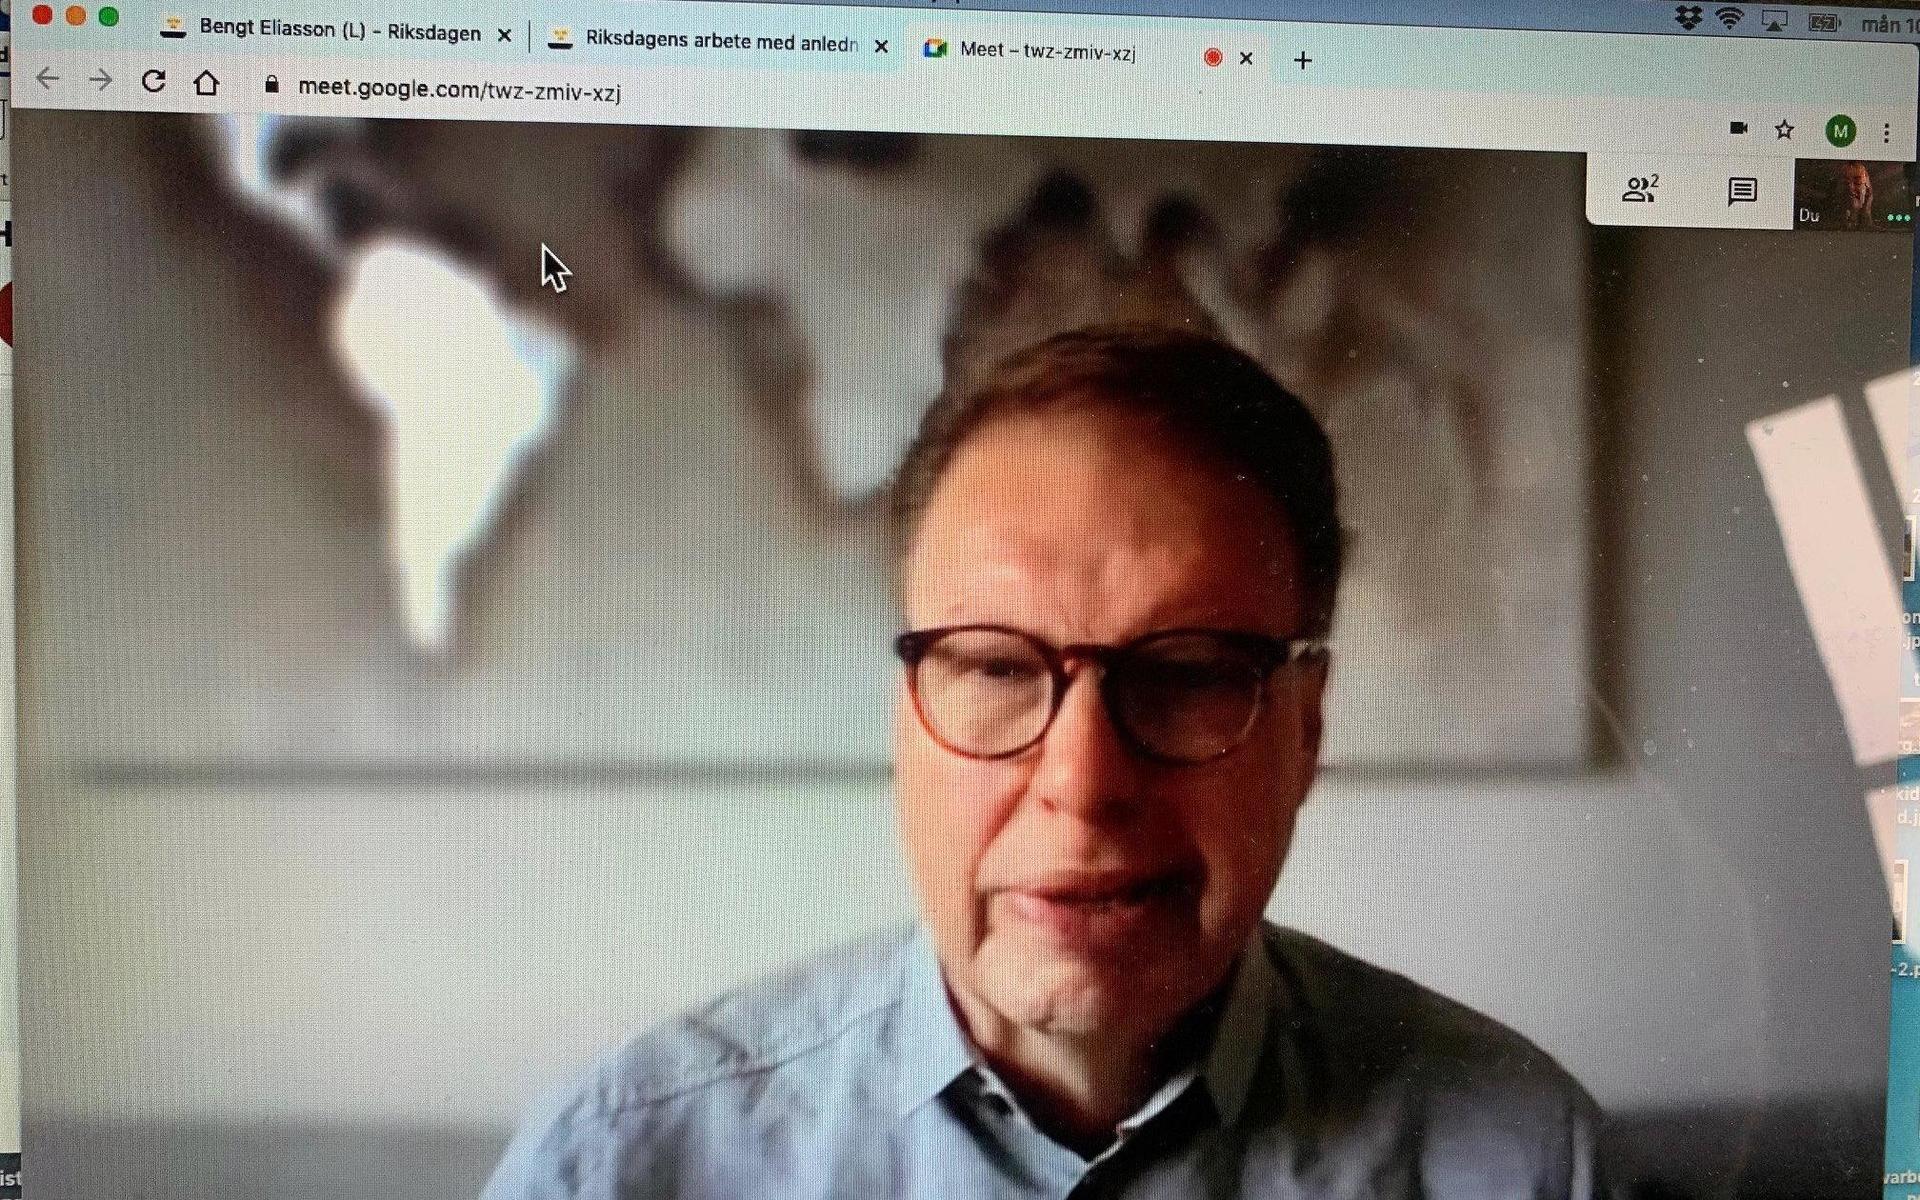 Bengt Eliasson (L) sköter mycket av riksdagsarbetet digitalt. ”Det är erbarmligt tråkigt”, medger han.